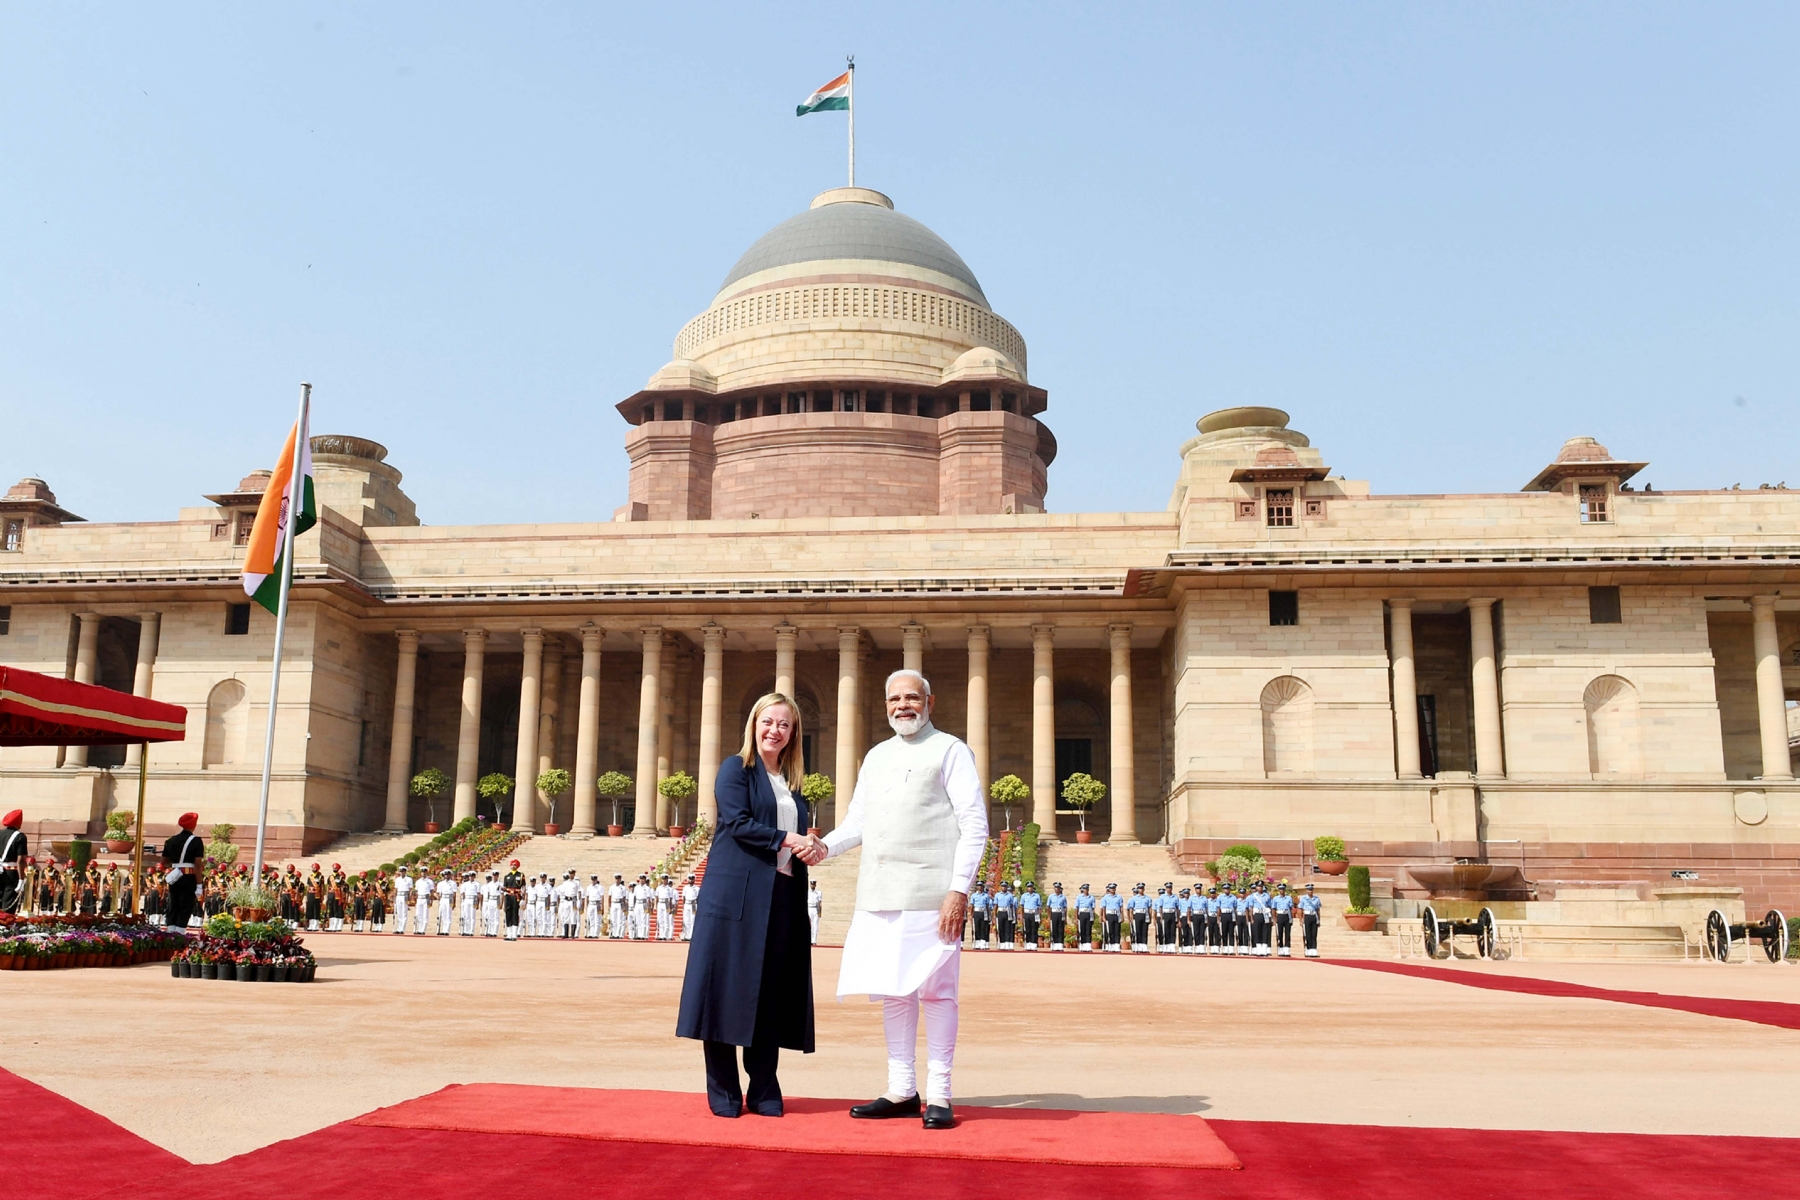 नई दिल्ली में गुरुवार 2 मार्च 2023 को राष्ट्रपति भवन में स्वागत समारोह के दौरान प्रधानमंत्री नरेंद्र मोदी  और इटली की प्रधानमंत्री जियोर्जिया मेलोनी। हिन्दुस्थान समाचार/ फोटो गणेश बिष्ट